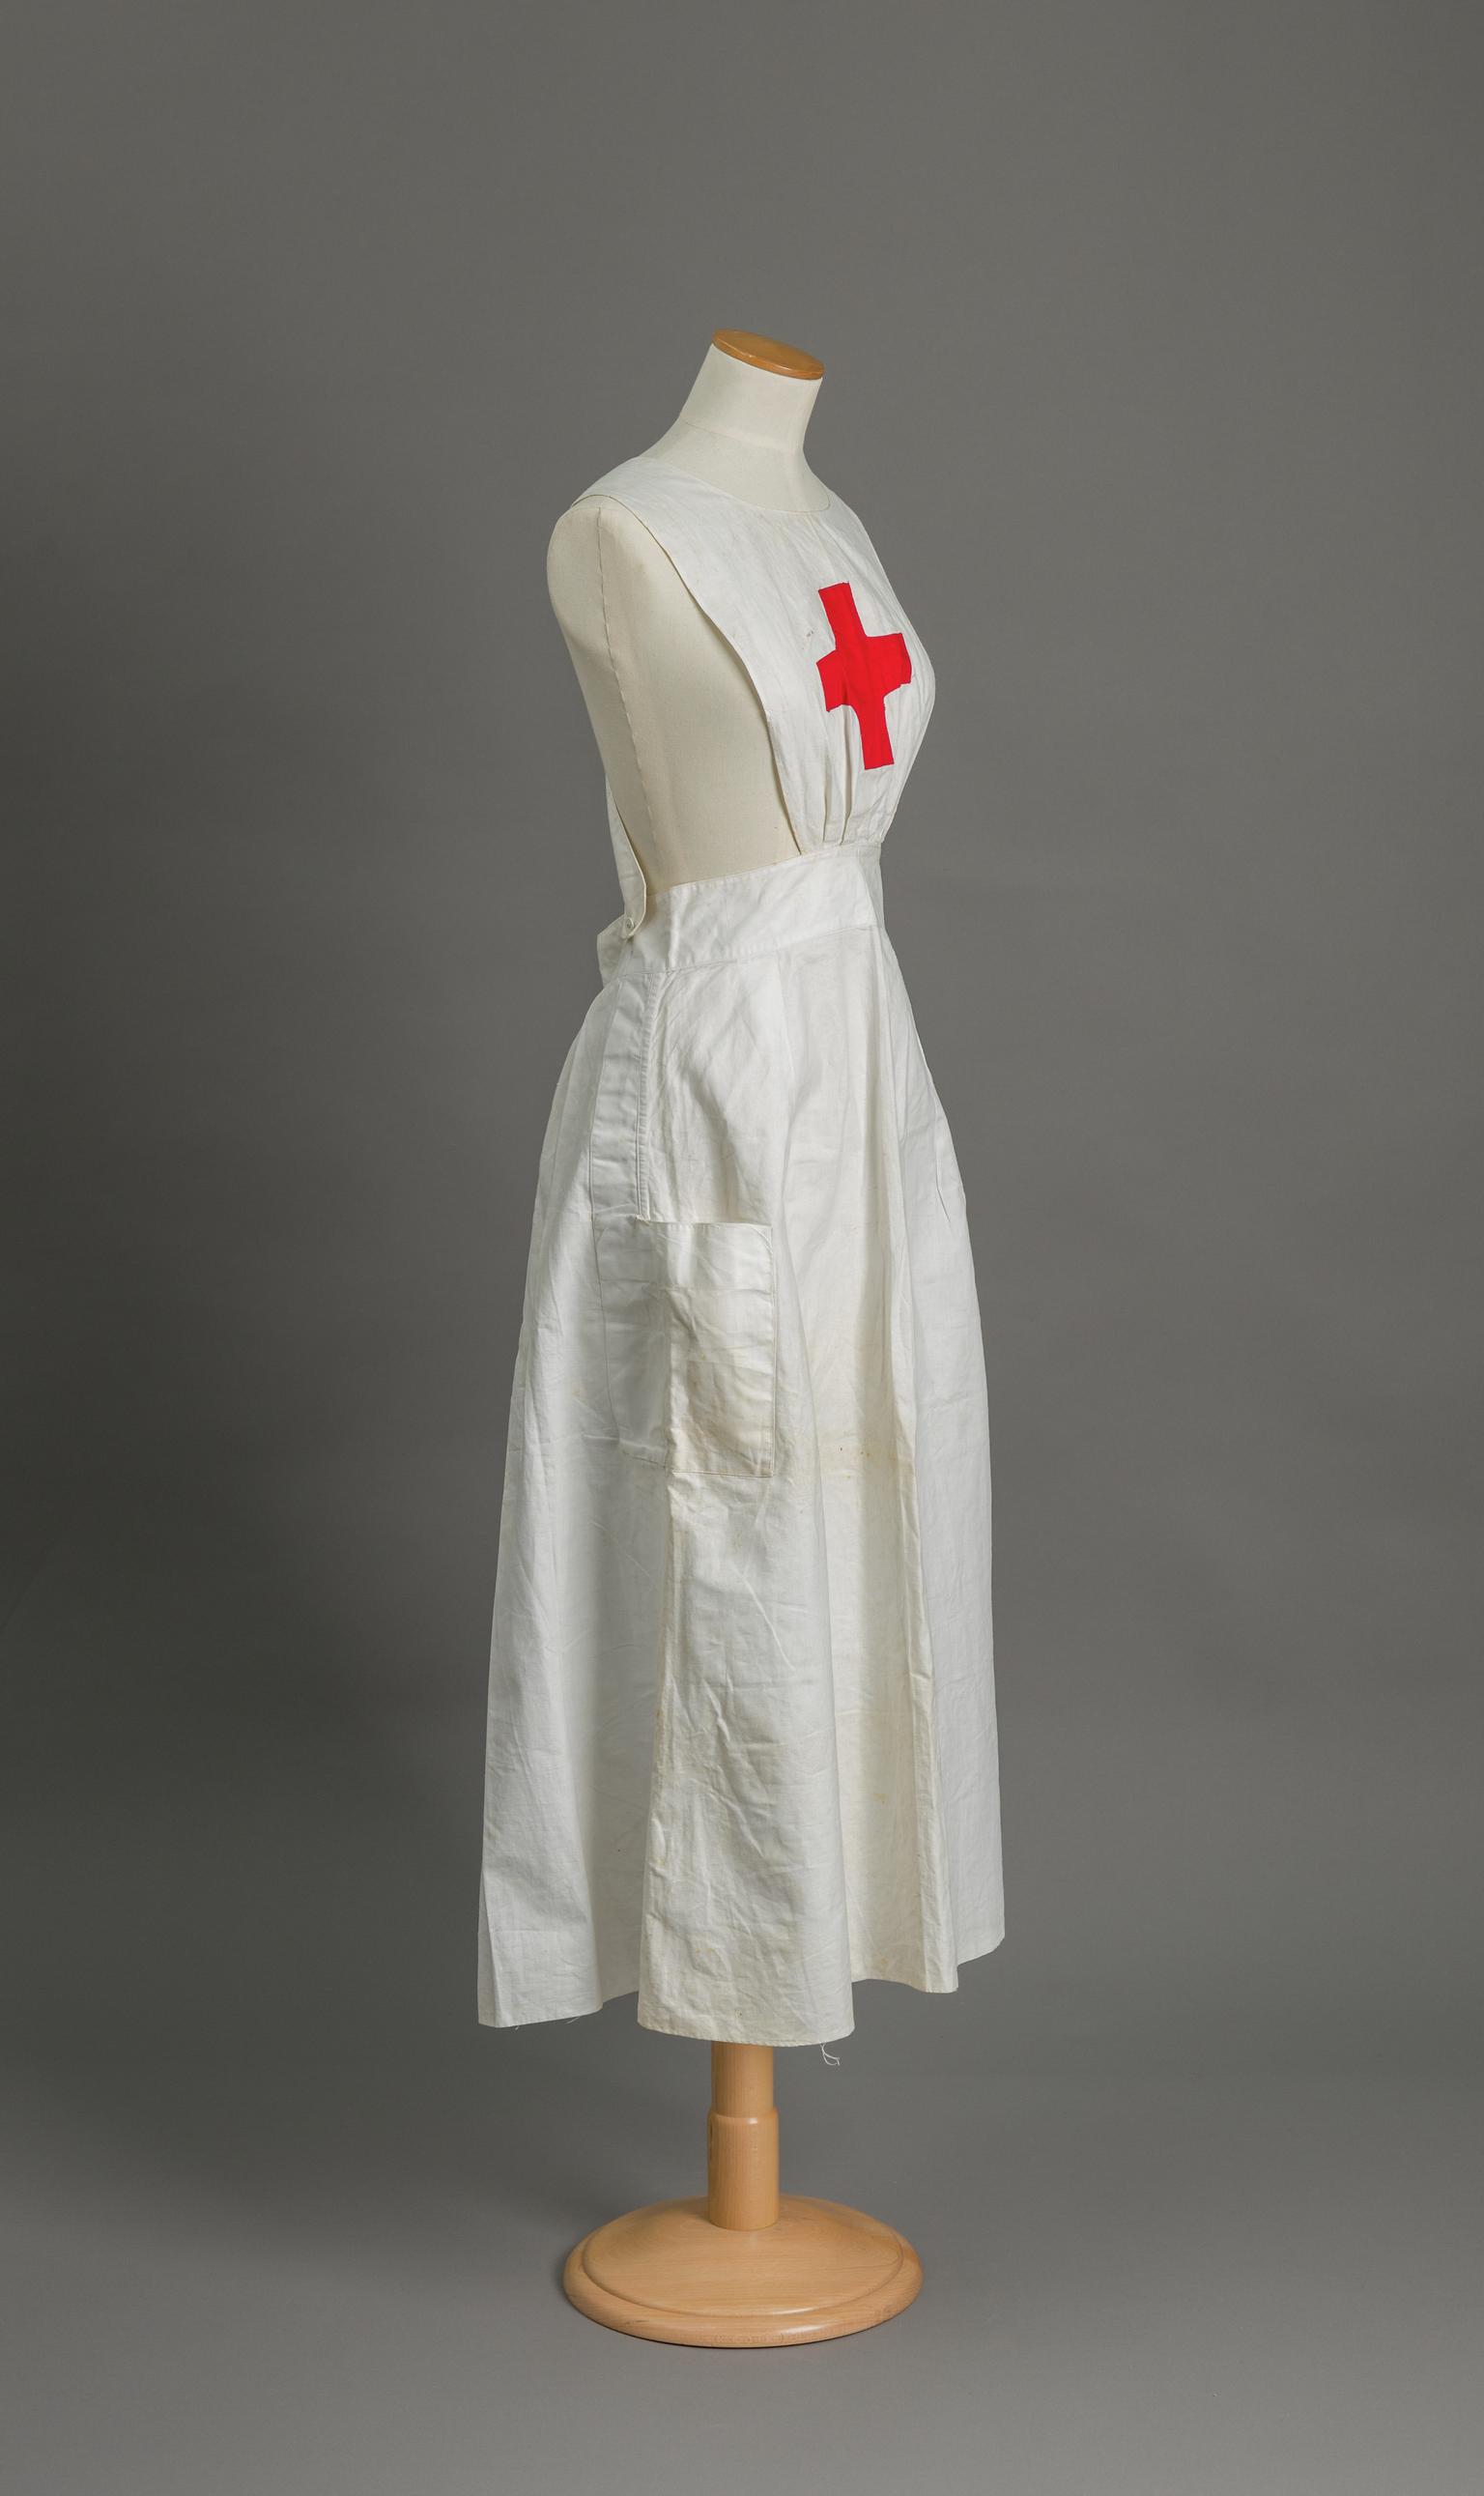 Nurse's apron